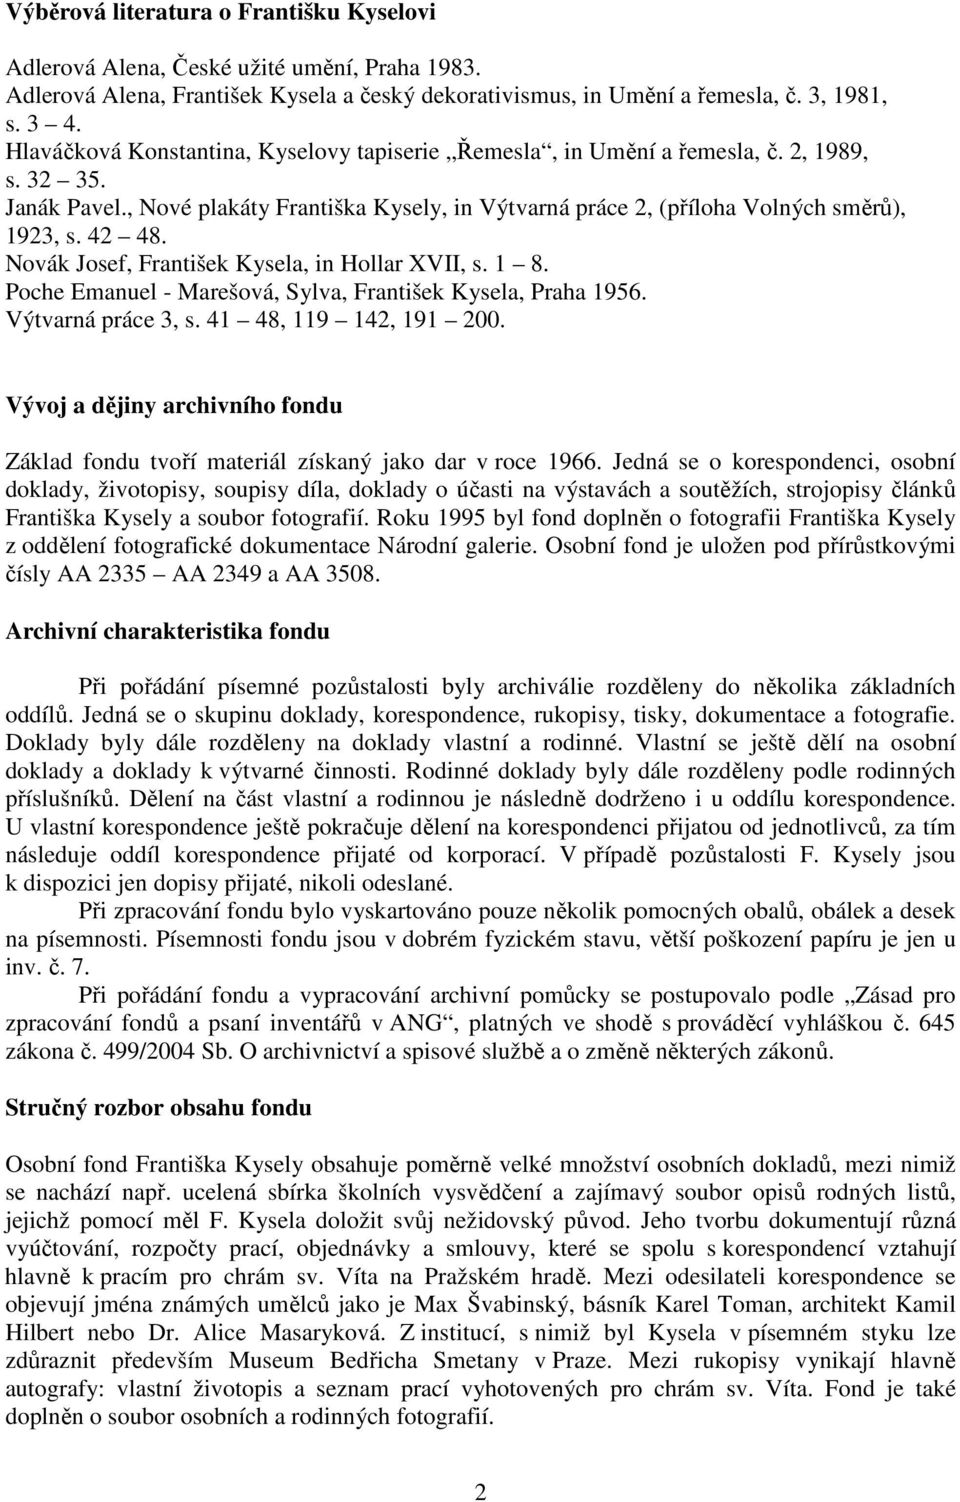 Novák Josef, František Kysela, in Hollar XVII, s. 1 8. Poche Emanuel - Marešová, Sylva, František Kysela, Praha 1956. Výtvarná práce 3, s. 41 48, 119 142, 191 200.